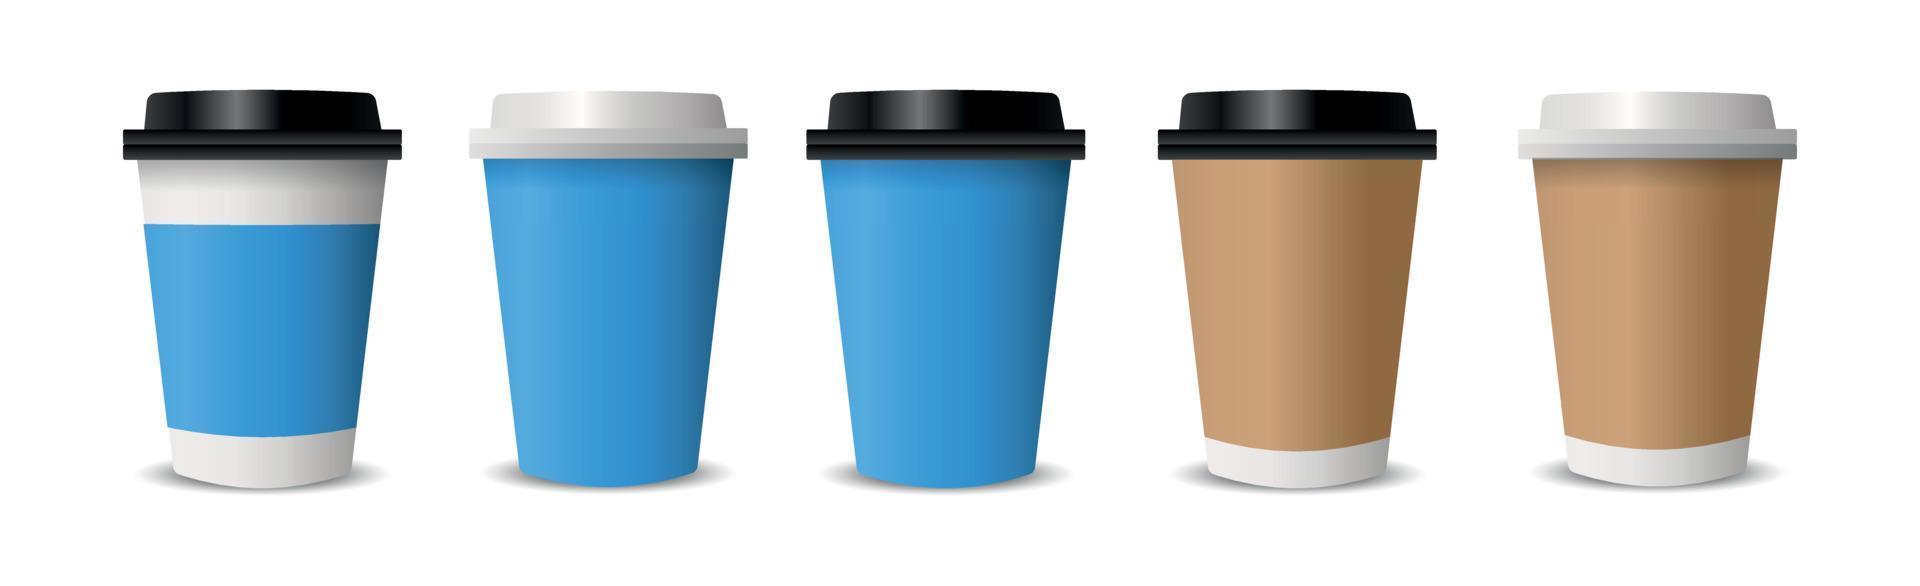 realistische kopjes voor koffie en thee op een witte achtergrond - vector